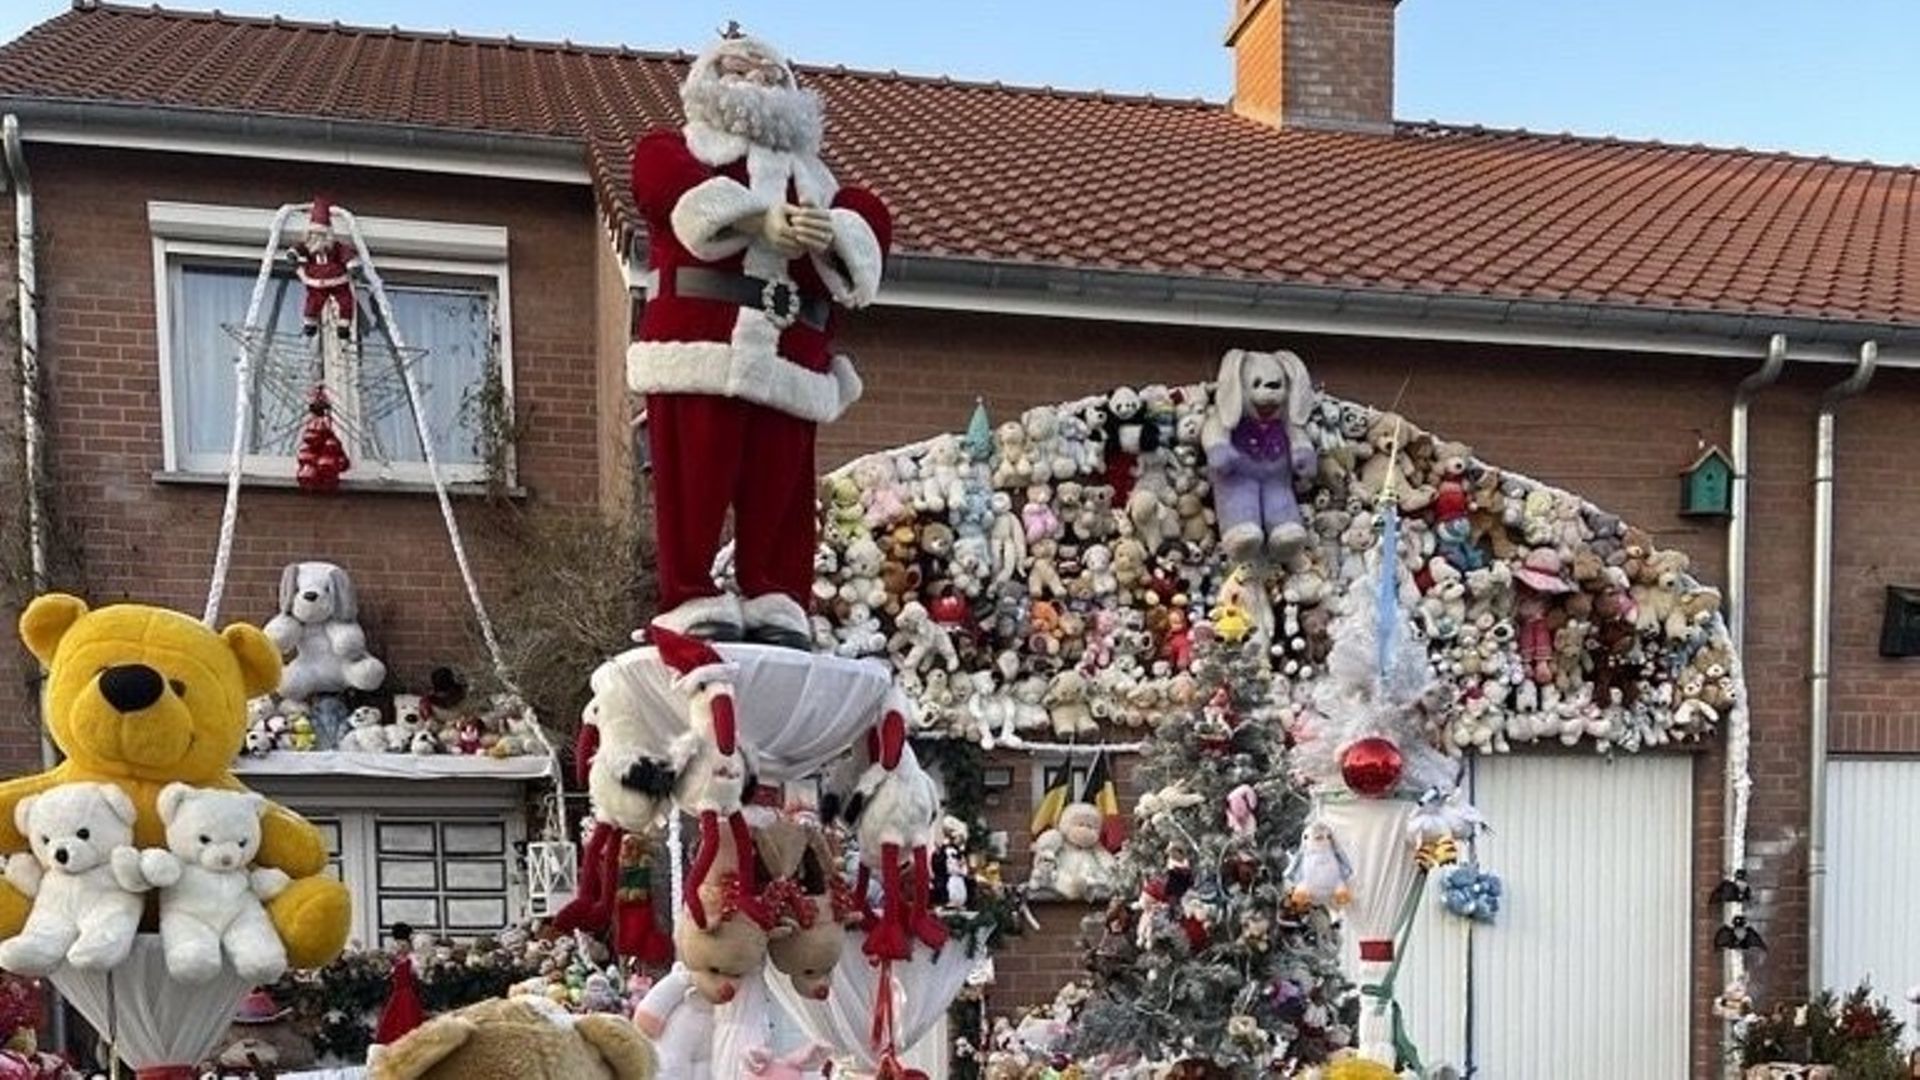 À Chaumont-Gistoux, ces habitants ont aussi choisi les peluches pour décorer leur maison. Les enfants qui passent peuvent en réserver une qui leur sera donnée en cadeau une fois la déco enlevée.